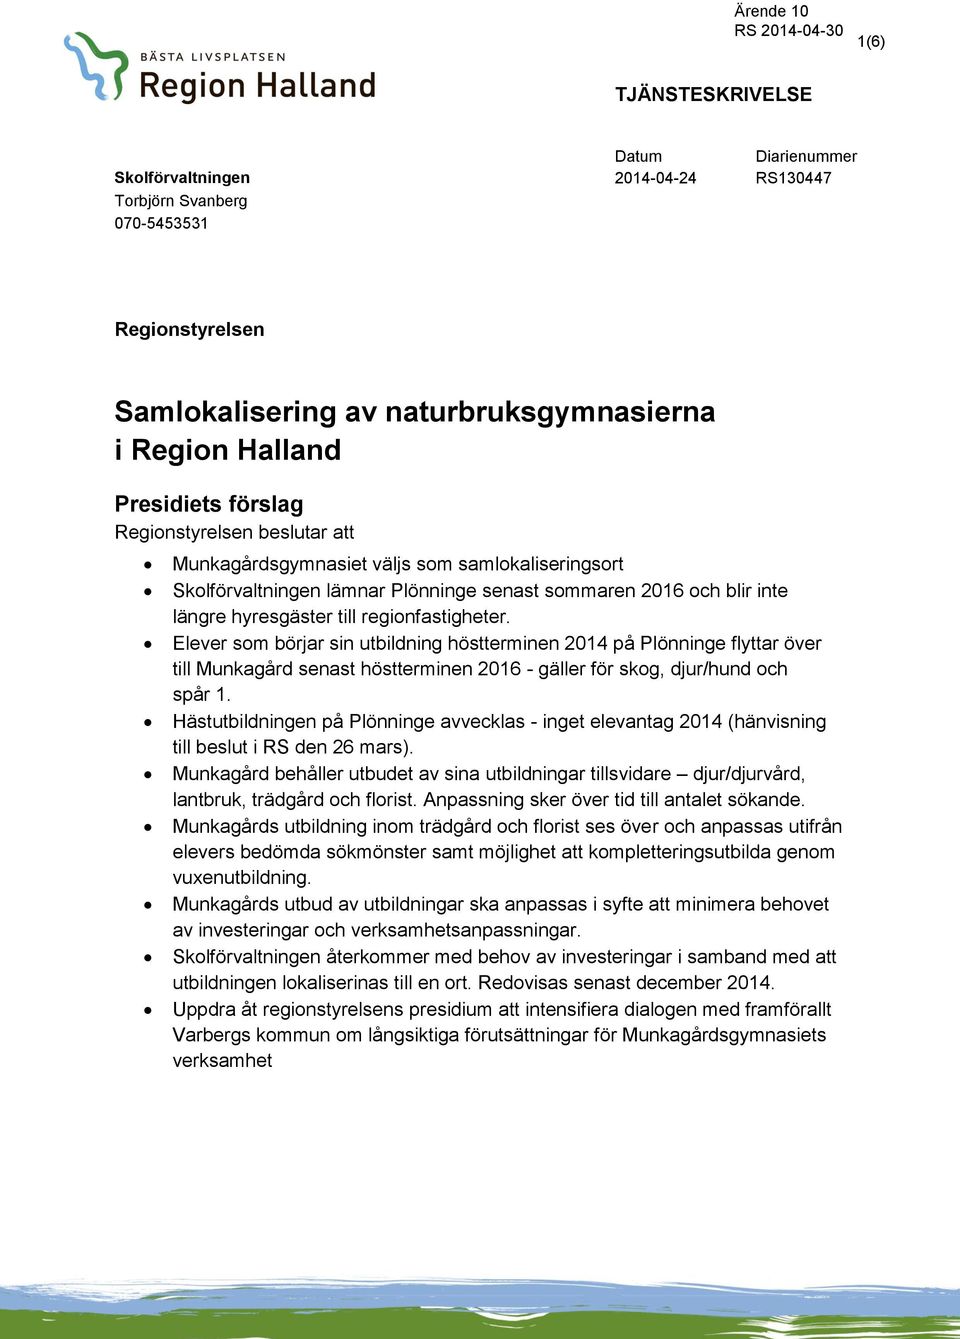 Elever som börjar sin utbildning höstterminen 2014 på Plönninge flyttar över till Munkagård senast höstterminen 2016 - gäller för skog, djur/hund och spår 1.